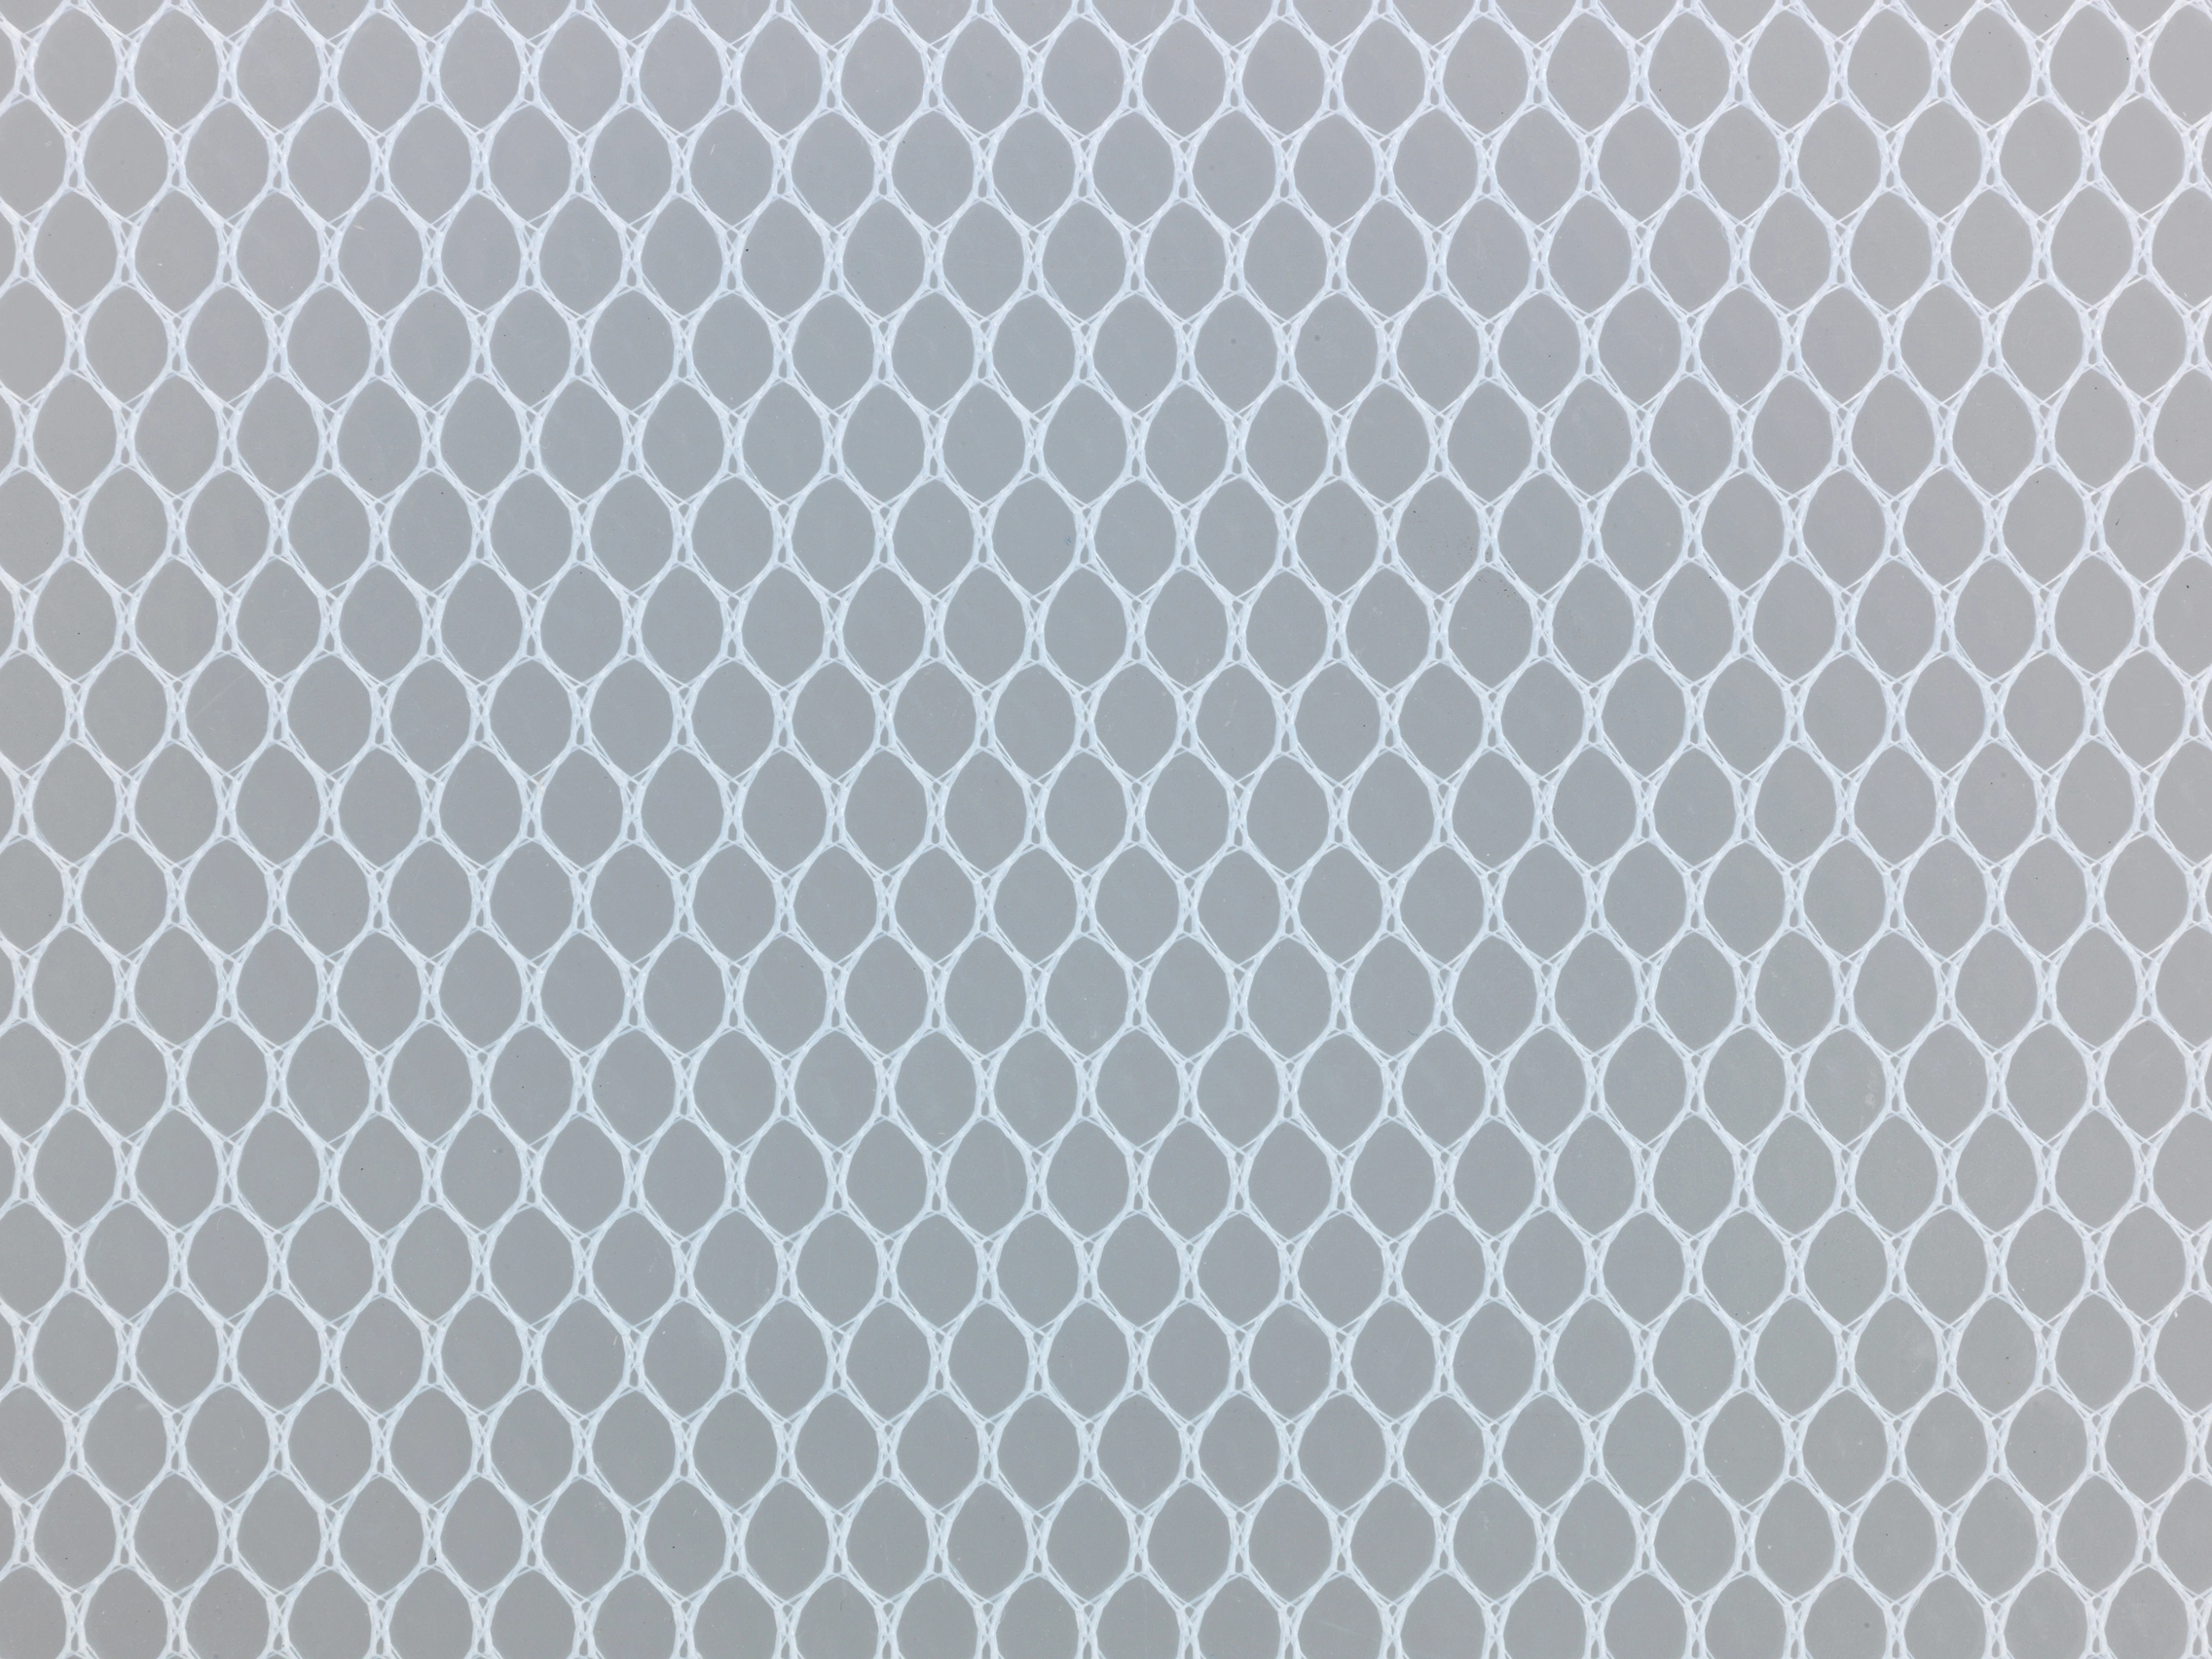  NYPOS Antirutsch-Matte in weiß (150x30cm